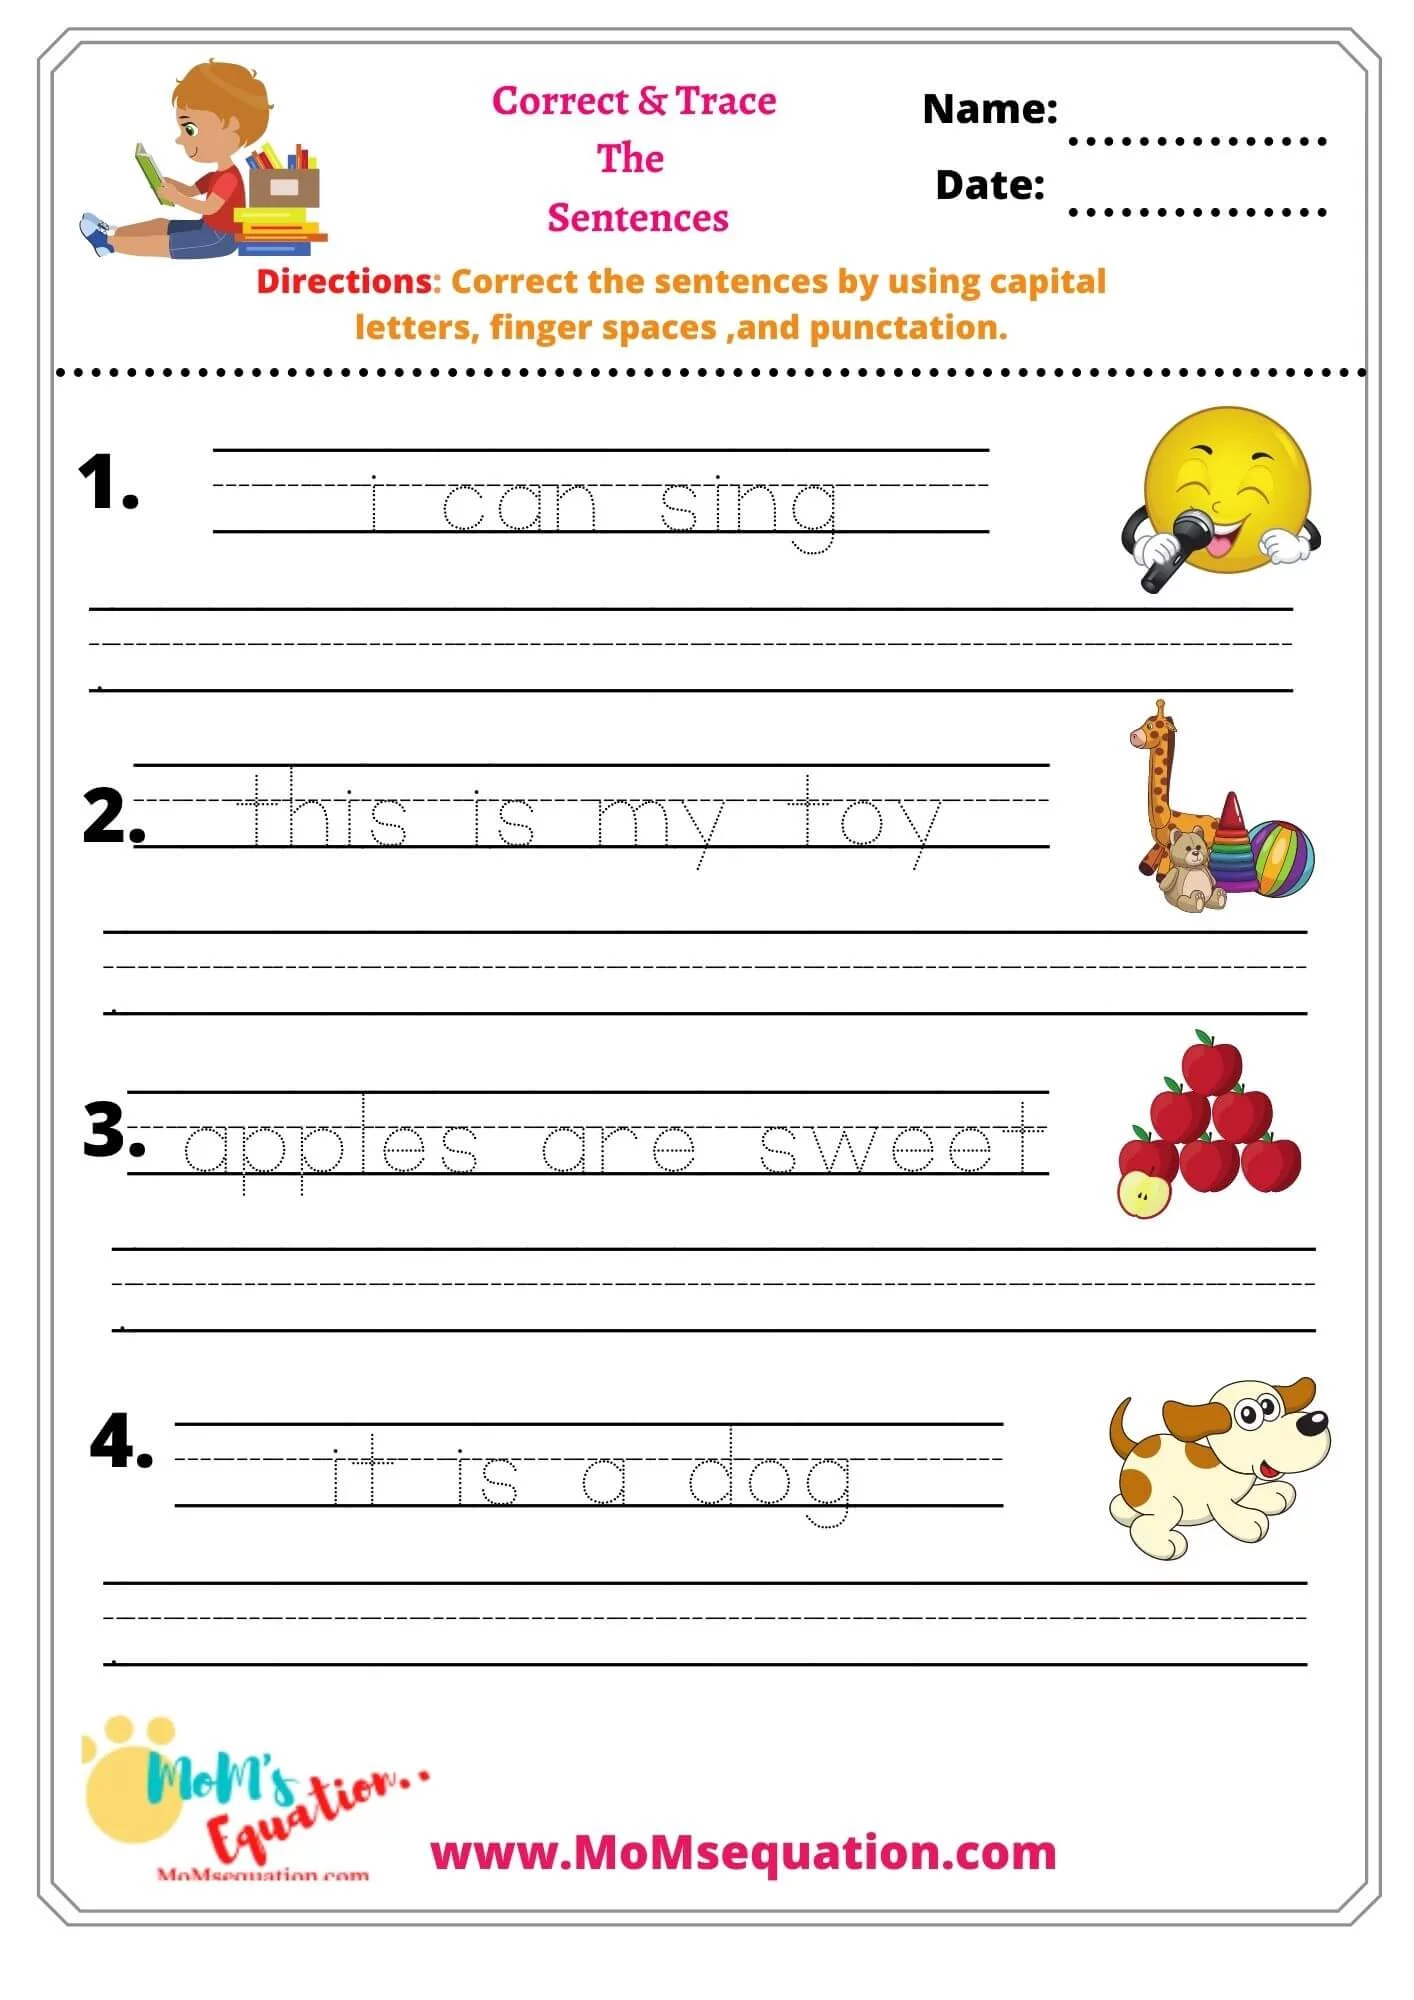 correct-the-sentences-grammar-worksheets-for-kindergarten-mom-sequation